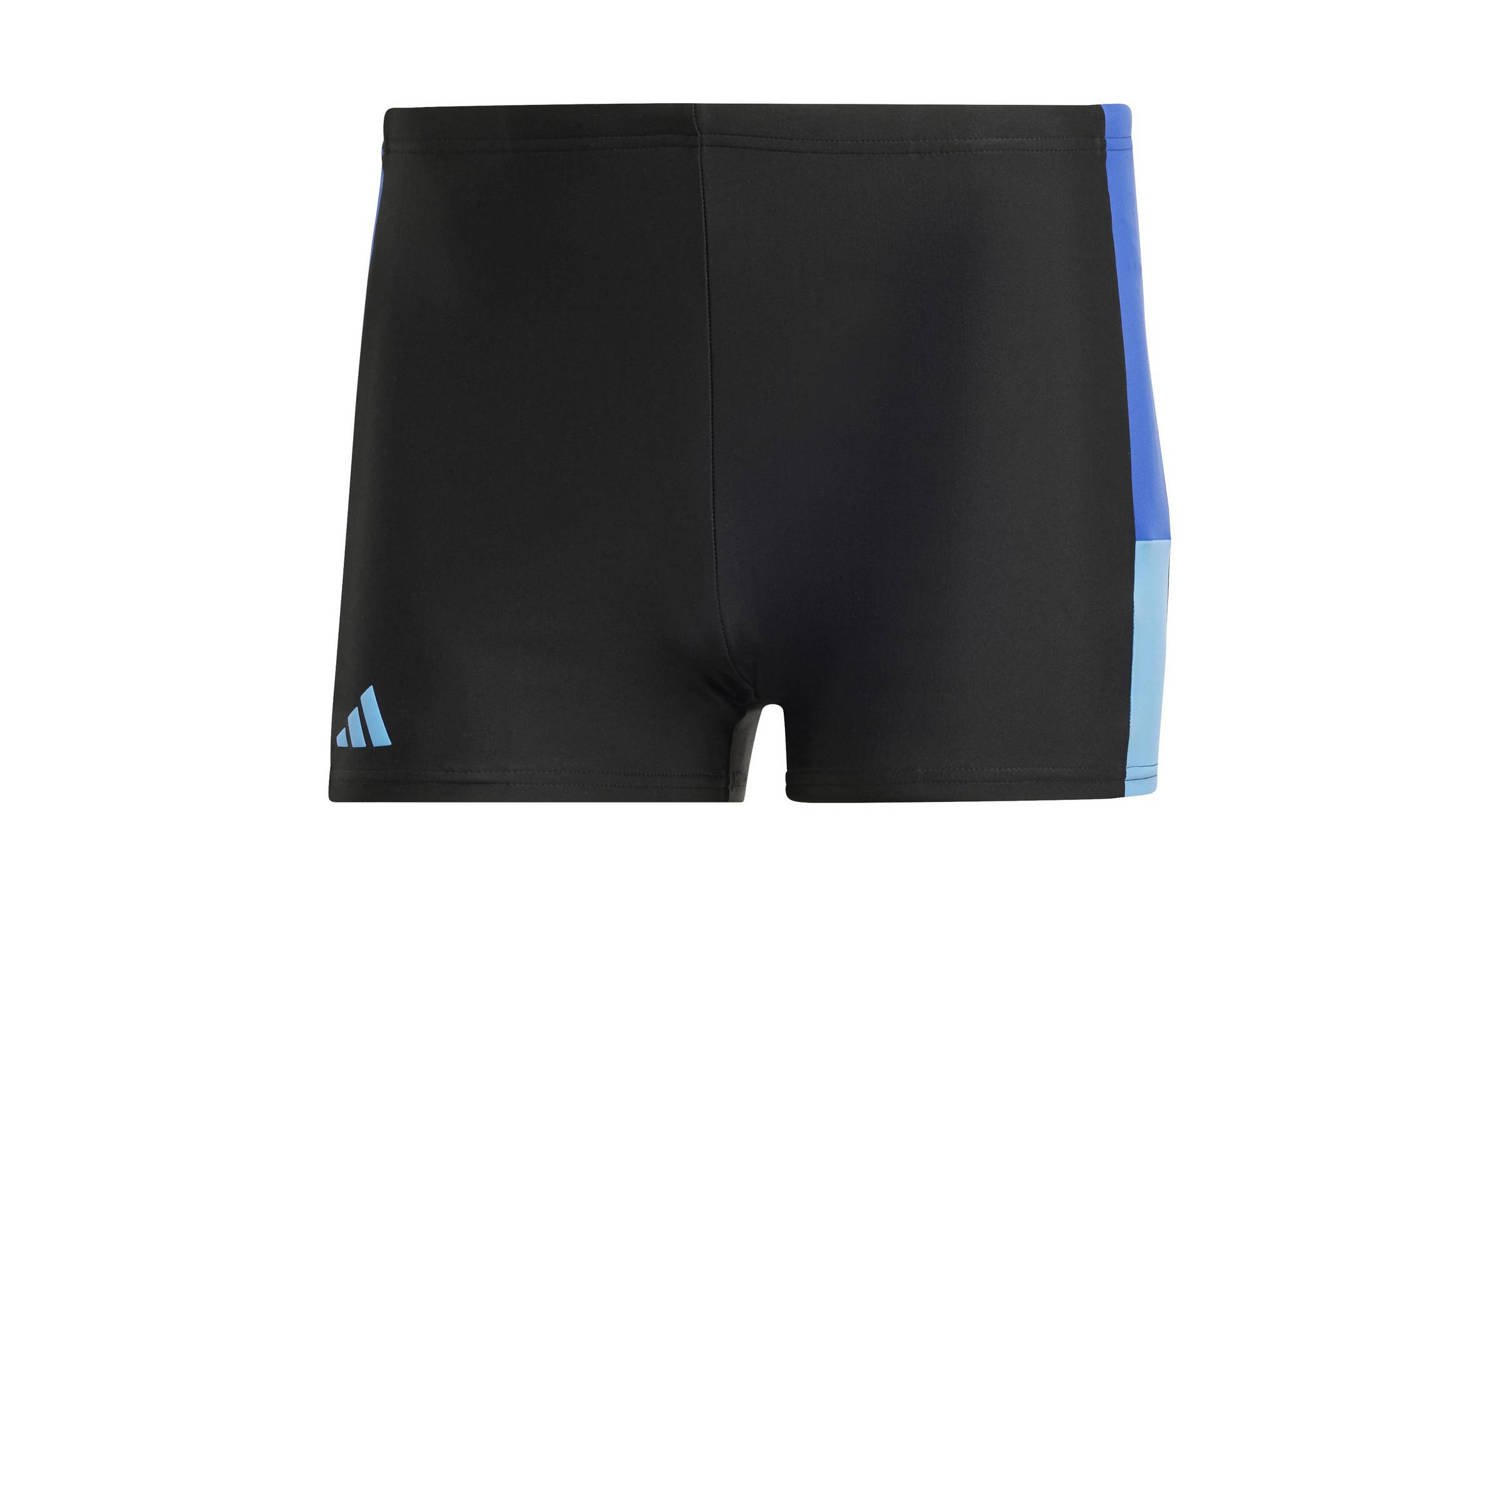 Adidas Performance Infinitex zwemboxer zwart blauw